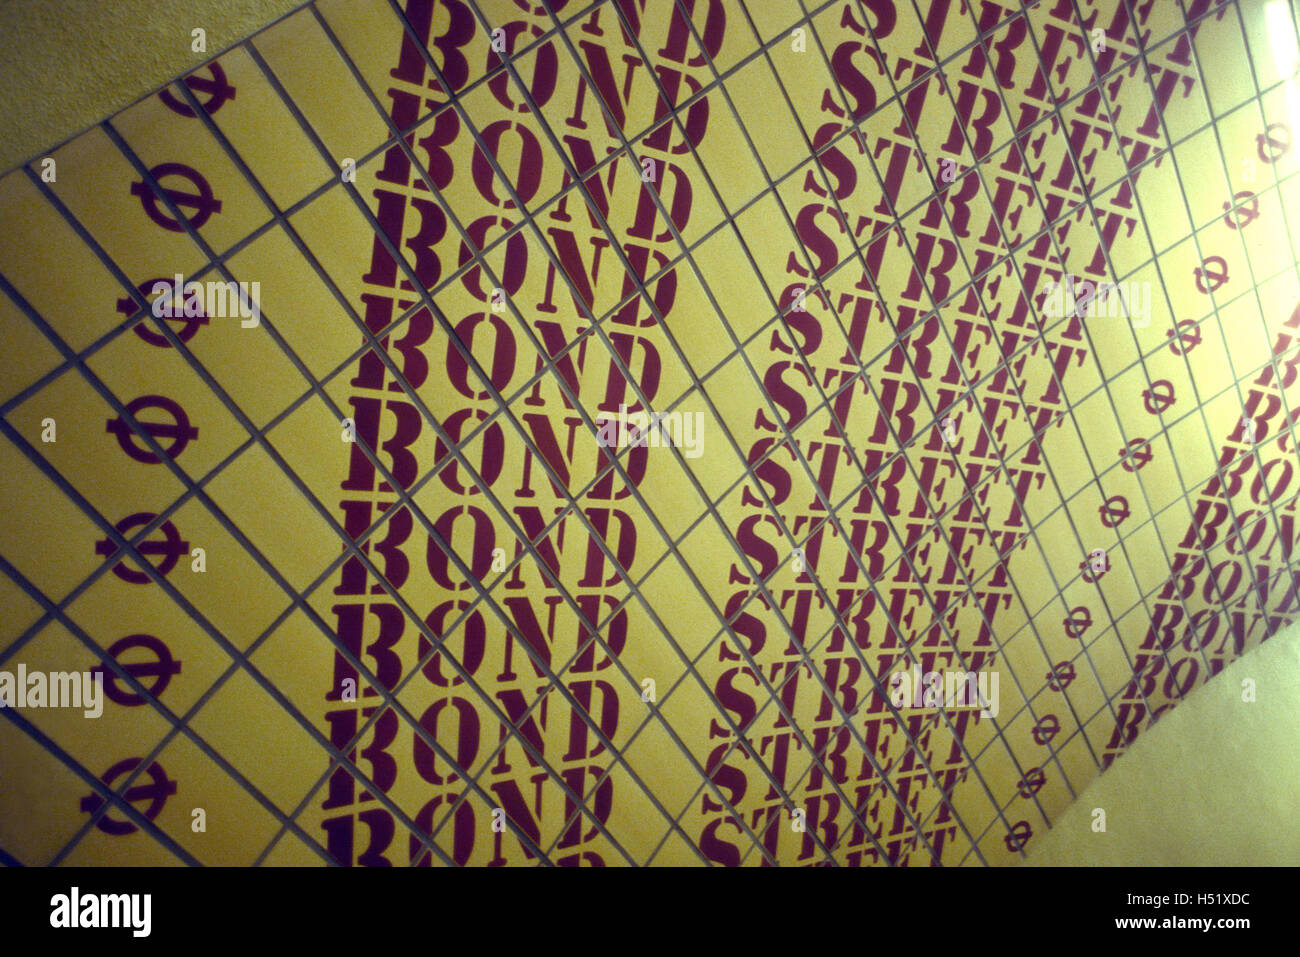 BOND STREET segno nella stazione della metropolitana di Londra 2000 Foto Stock